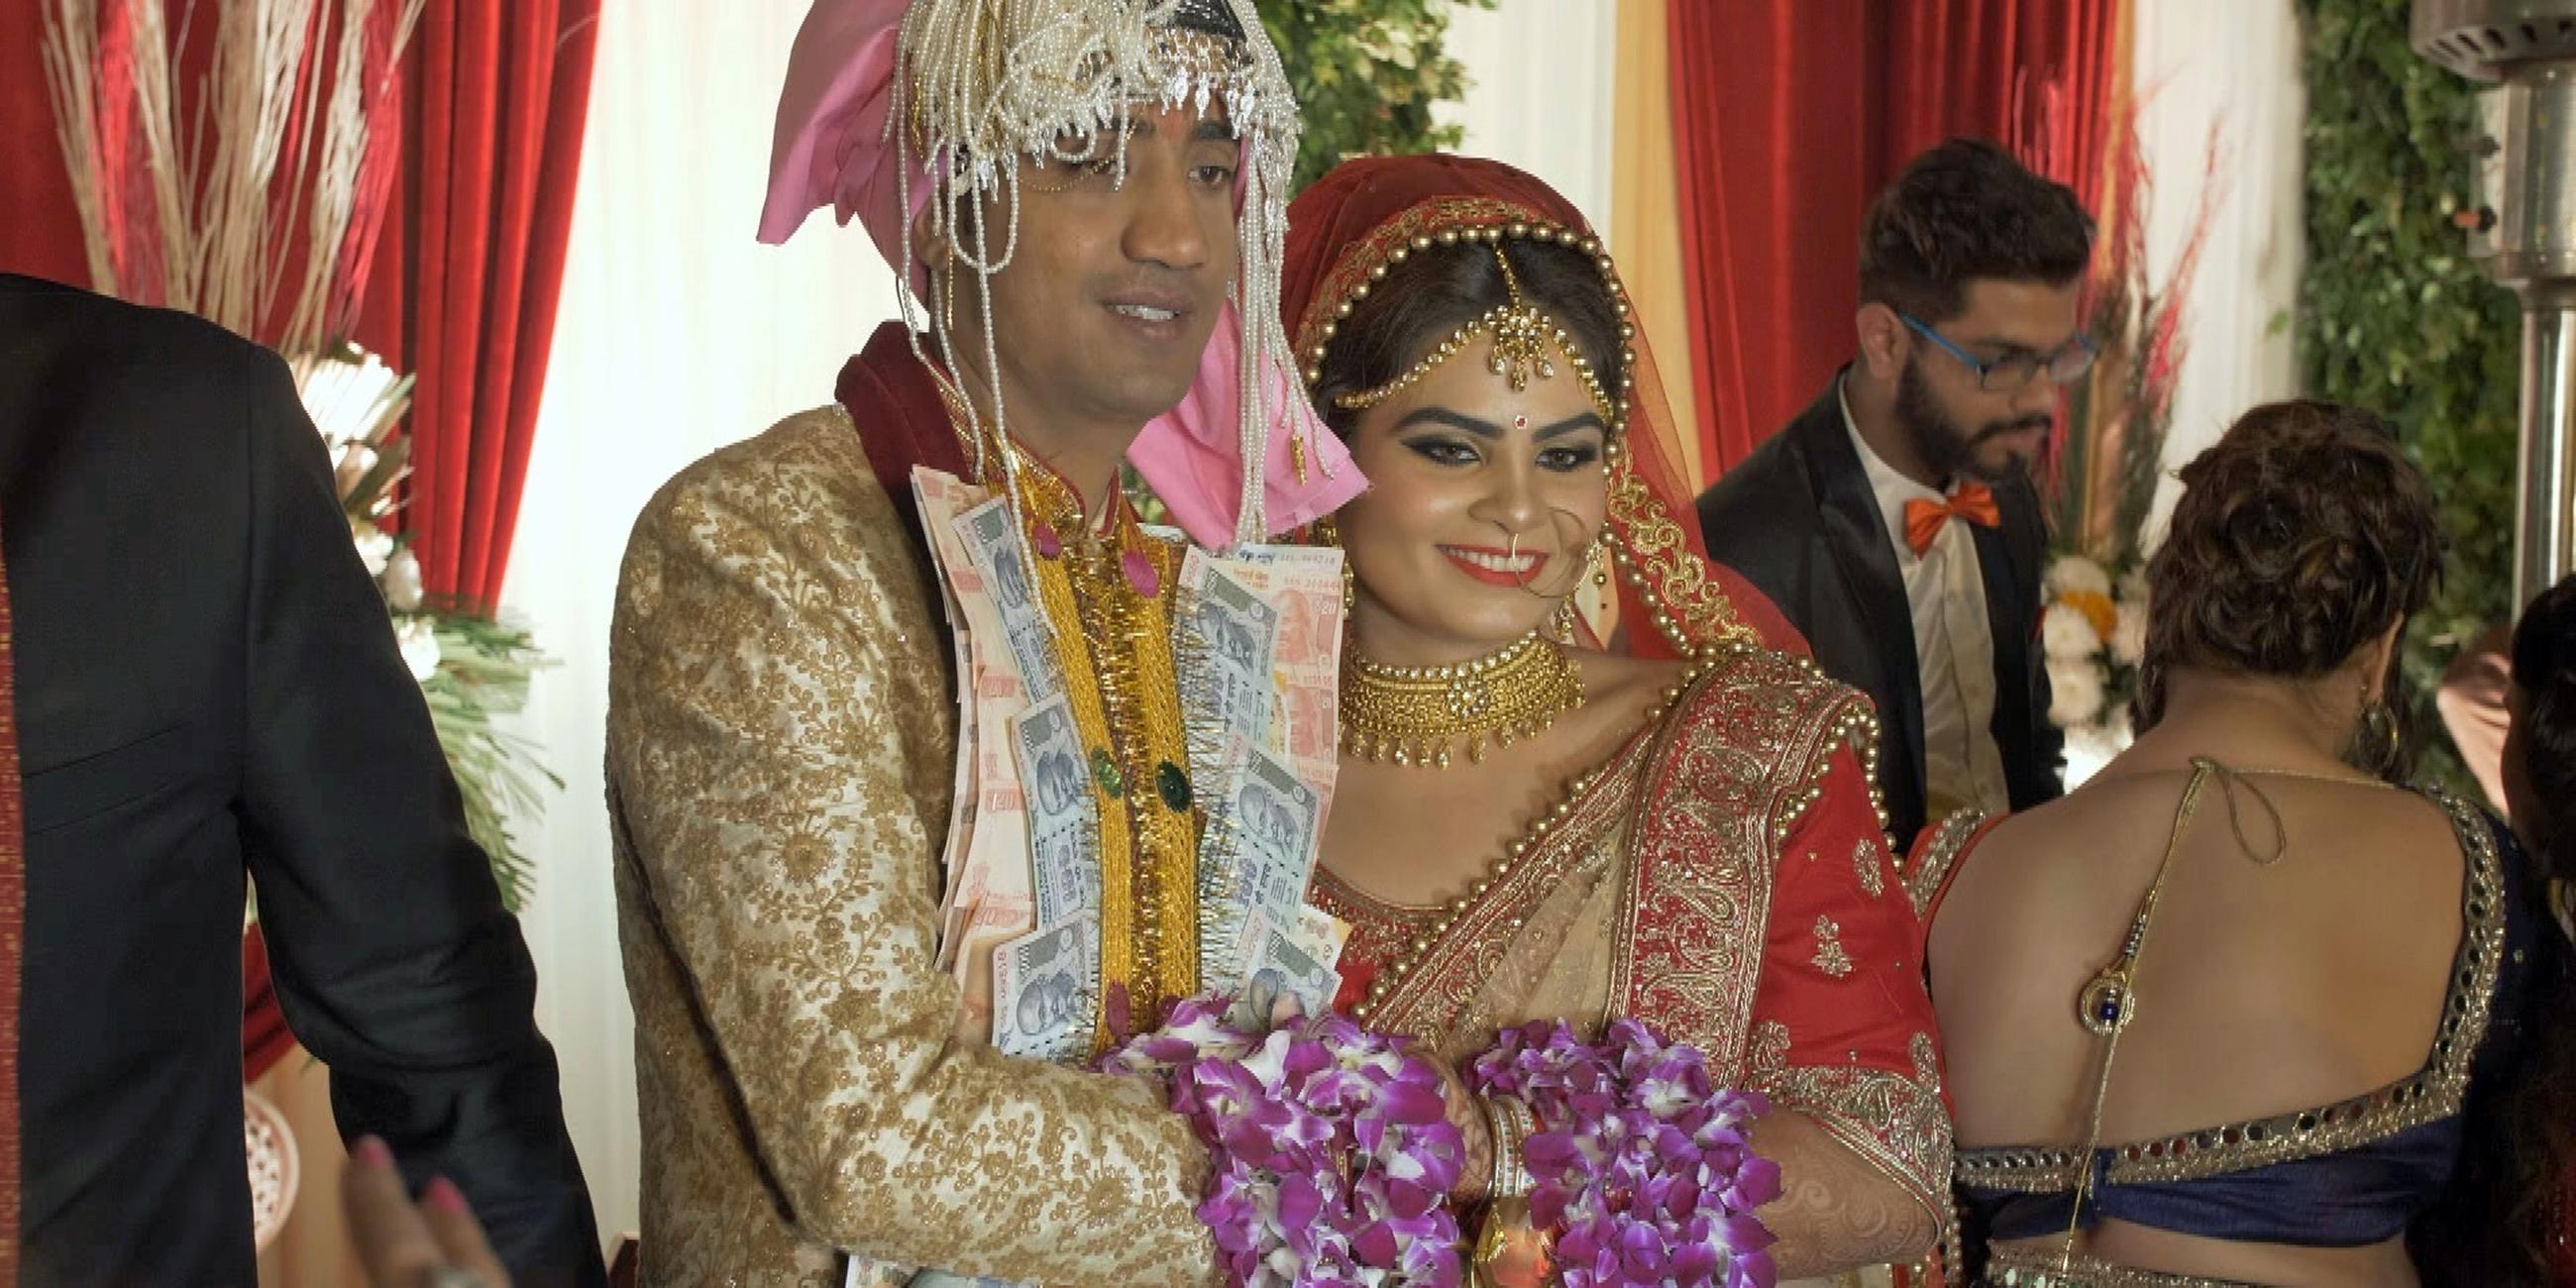 "Liebe und Sex in Indien (AT)": Zentral ein prächtig gekleidetes und geschmücktes Brautpaar inmitten einer privaten Hochzeitsgesellschaft. An seinen Revers sind unzählige Banknoten angeheftet, sie stehen eng nebeneinander, halten sich an den Händen, über ihre Unterarme sind lila Blumengirlanden drapiert.